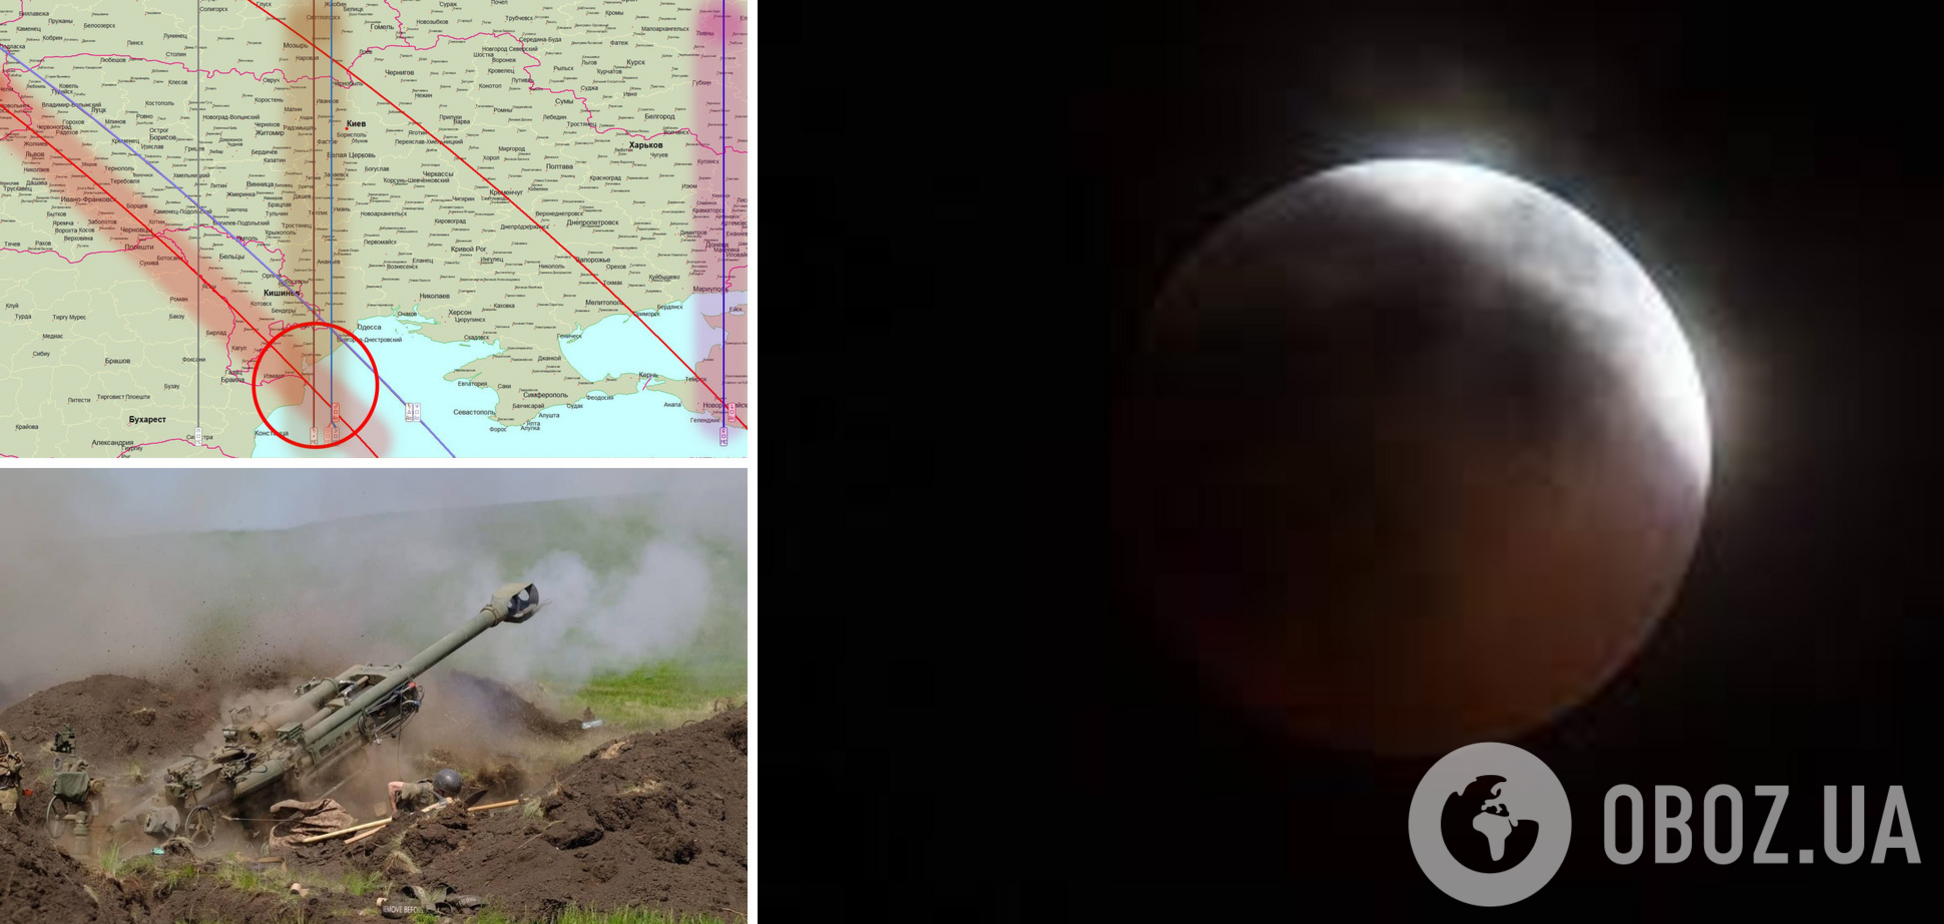 Новий виток насильства і вбивств: астролог розповів, що принесе місячне затемнення 16 травня Україні